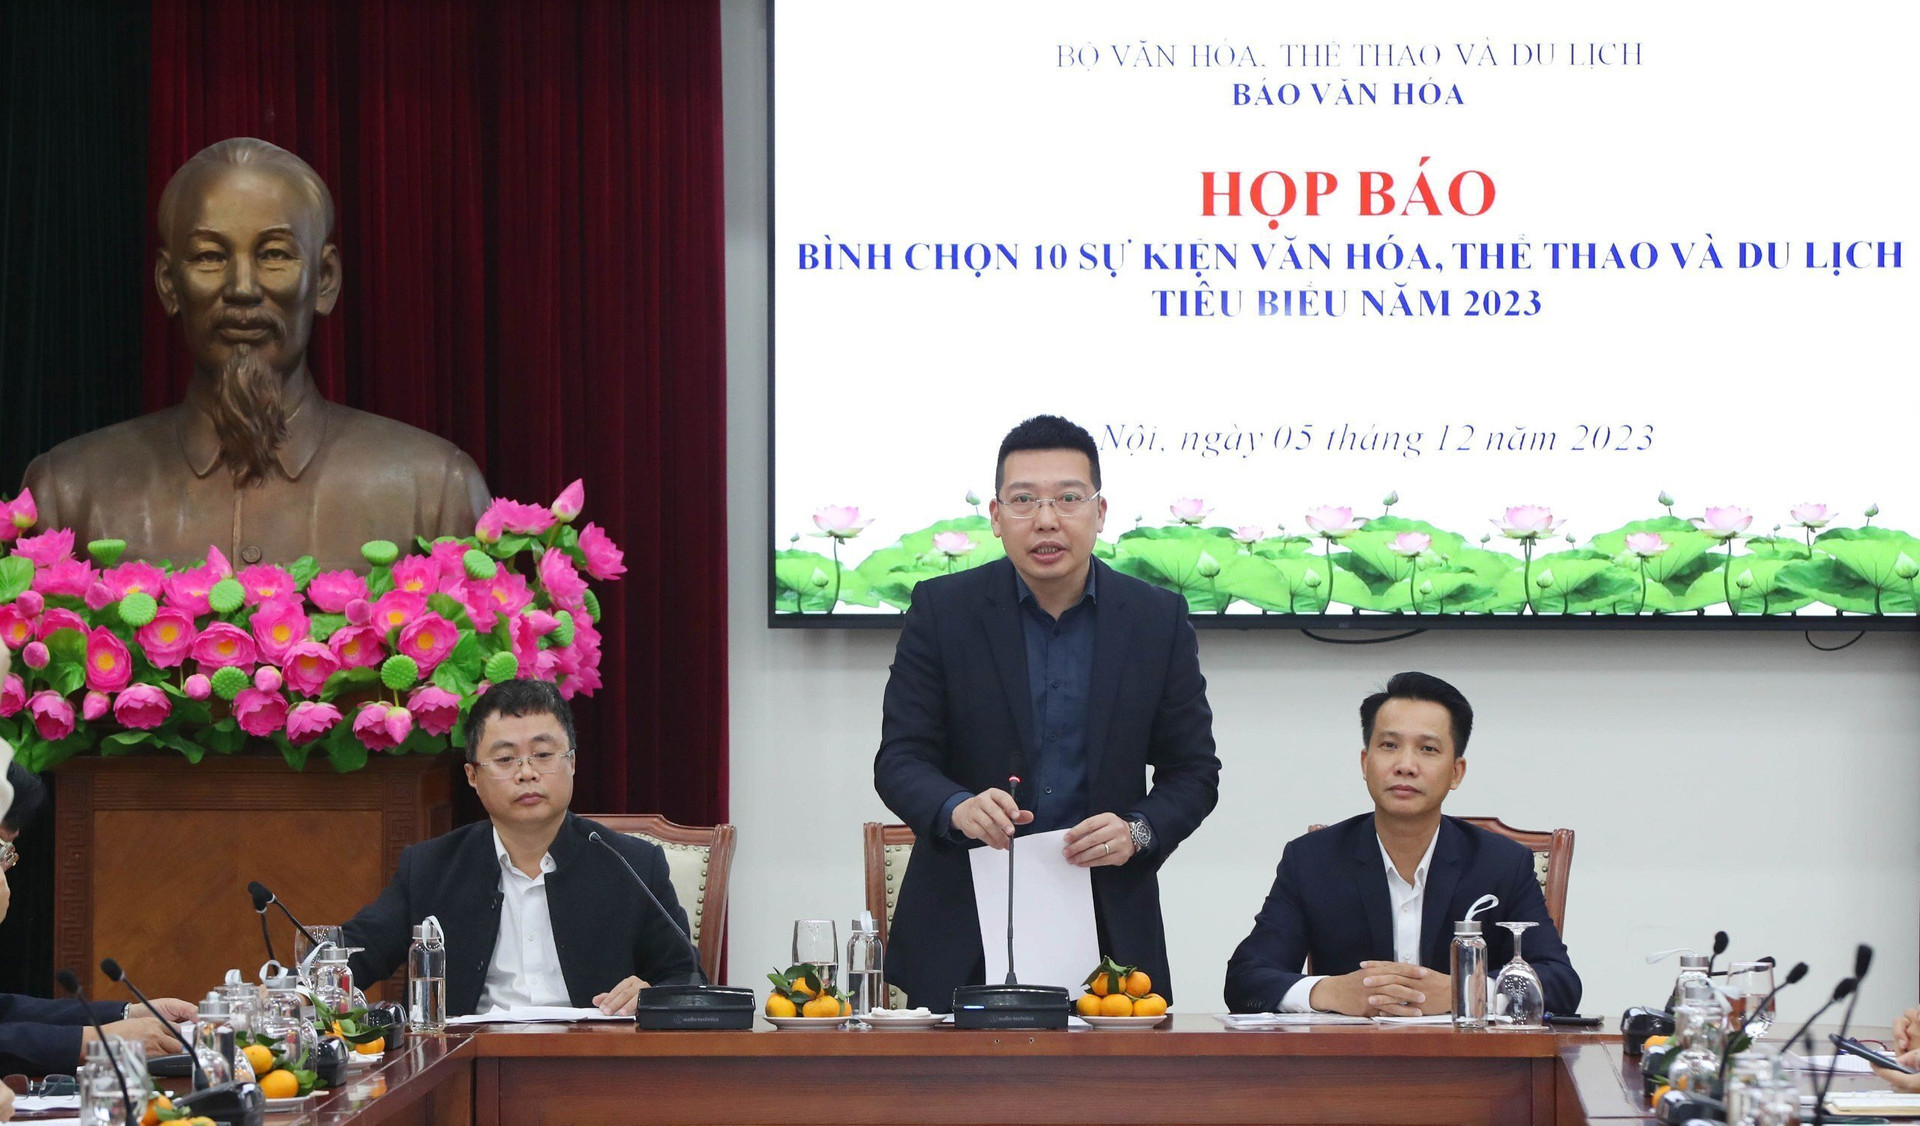 Ông Nguyễn Anh Vũ, Tổng biên tập Báo Văn hóa, Trưởng Ban tổ chức phát biểu tại buổi họp báo.